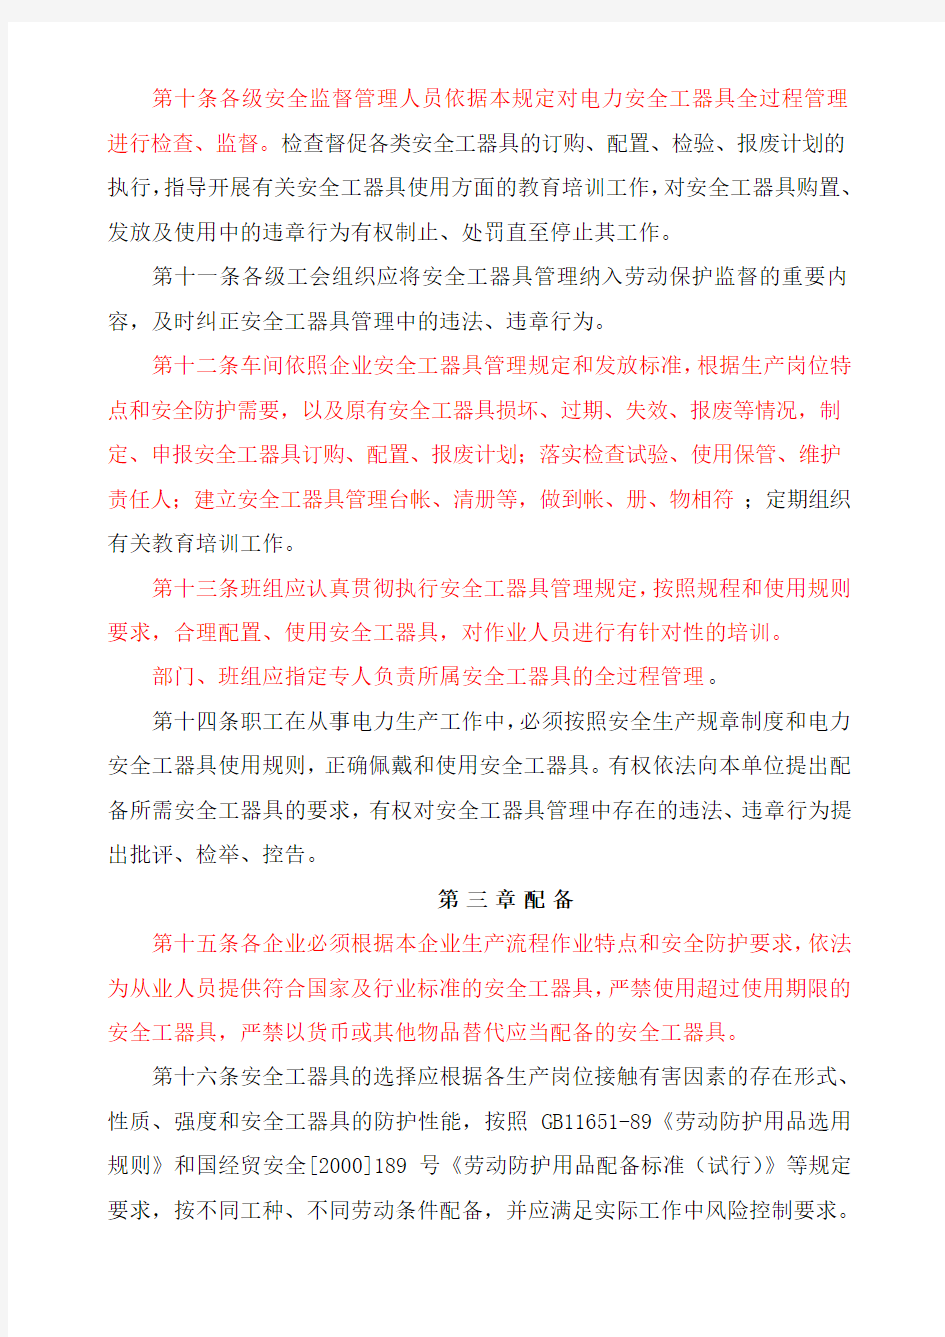 中国华电集团公司安全工器具管理规定版